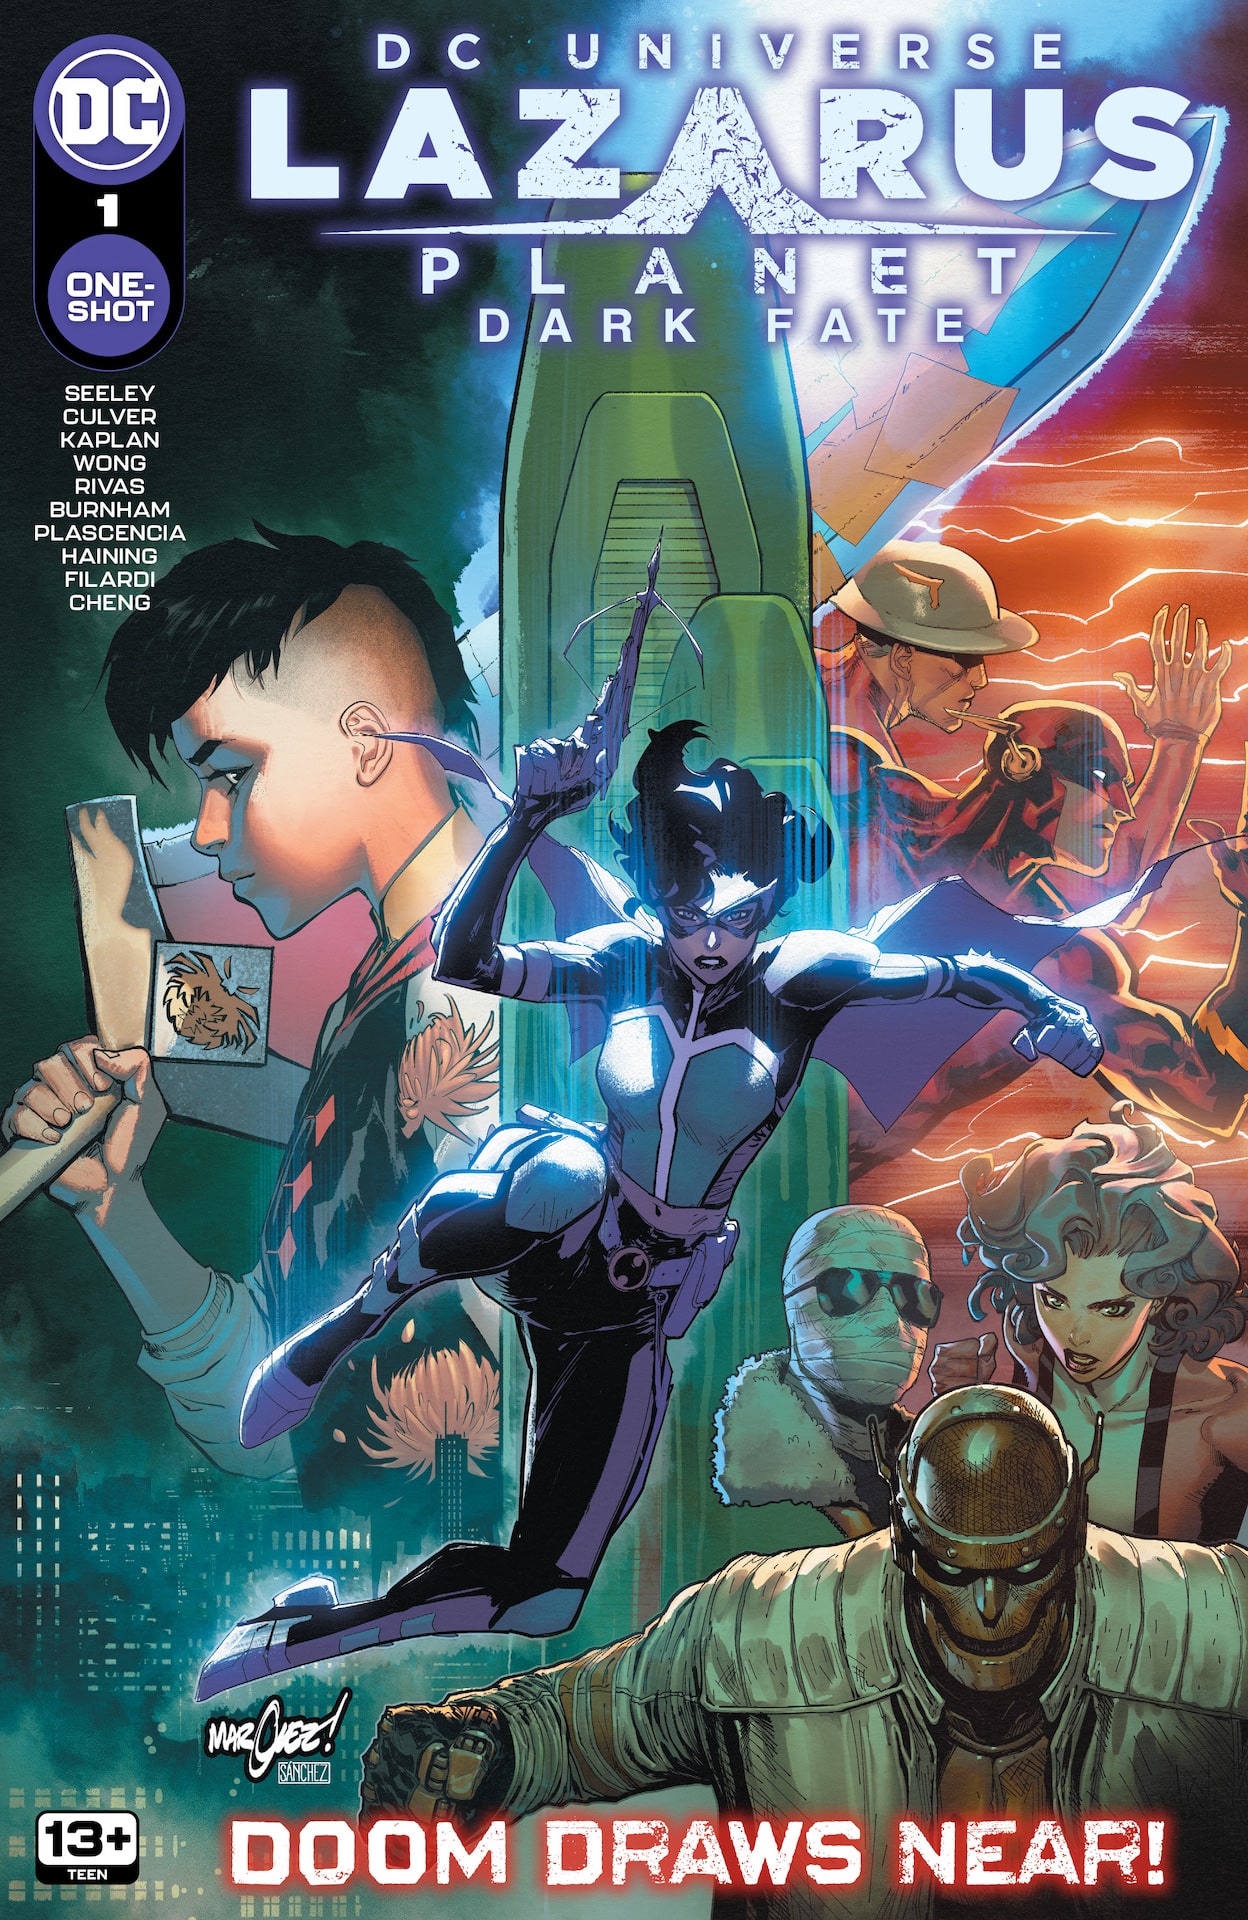 DC Preview: Lazarus Planet: Dark Fate #1